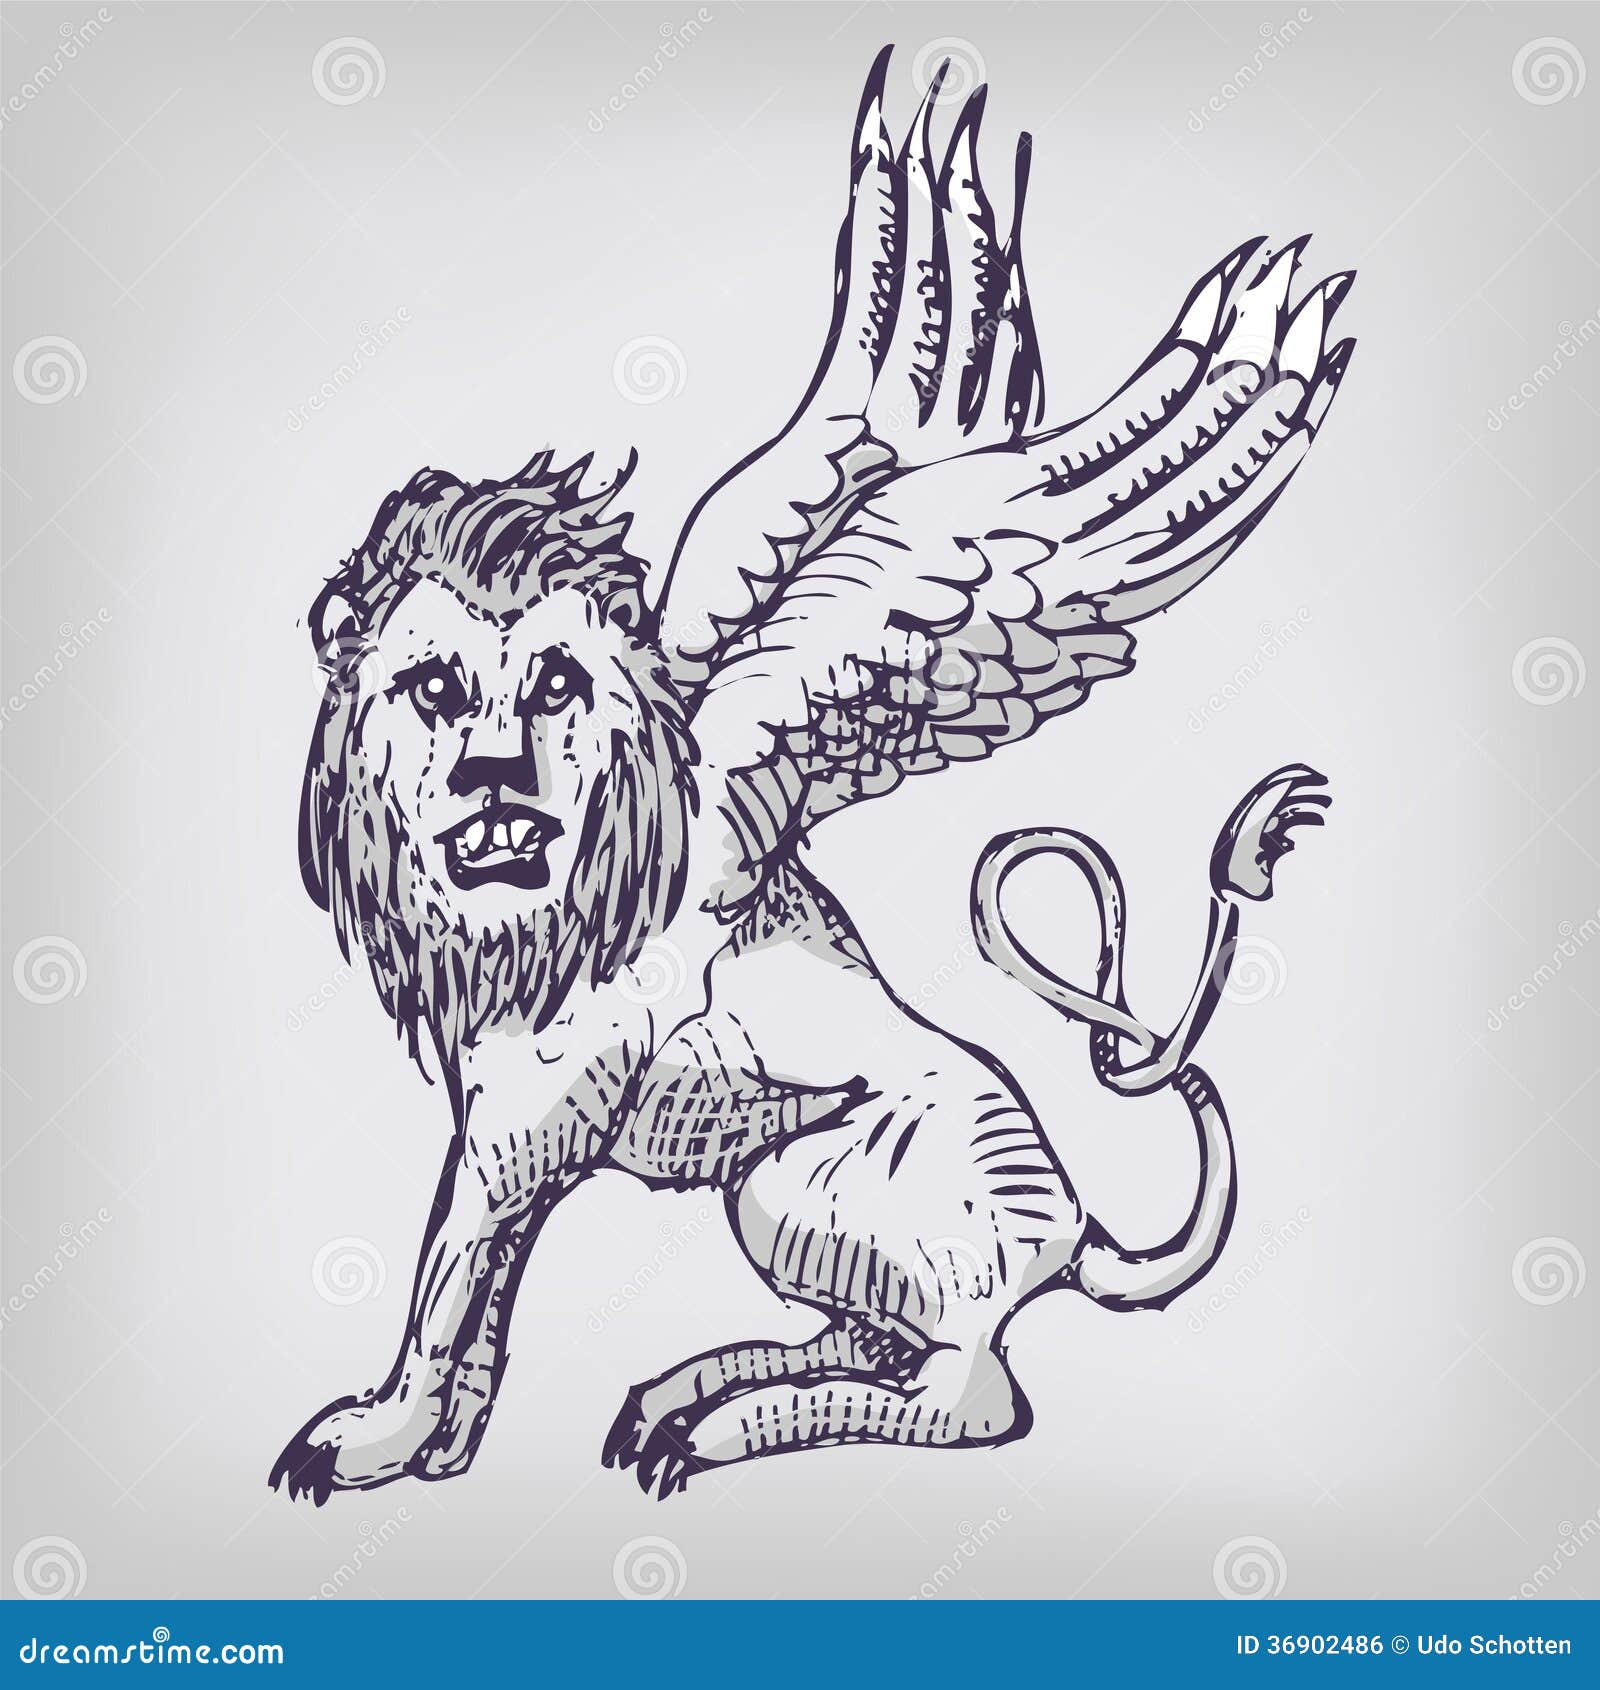 Лев с крыльями рисунок